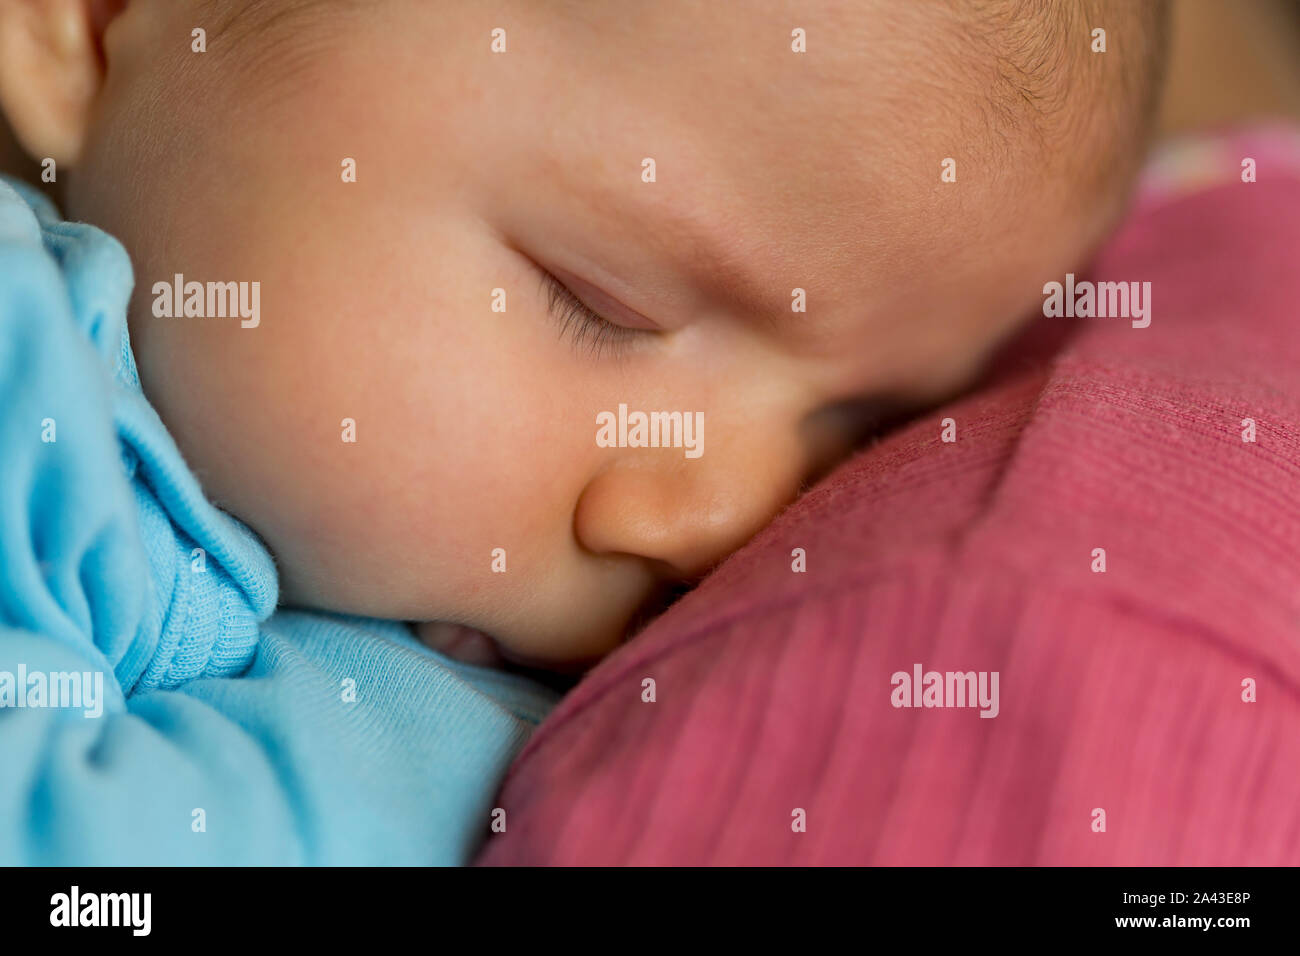 Ausschreibung Szene: Cute Baby friedlich schlafen im Arm der Mutter. Stockfoto